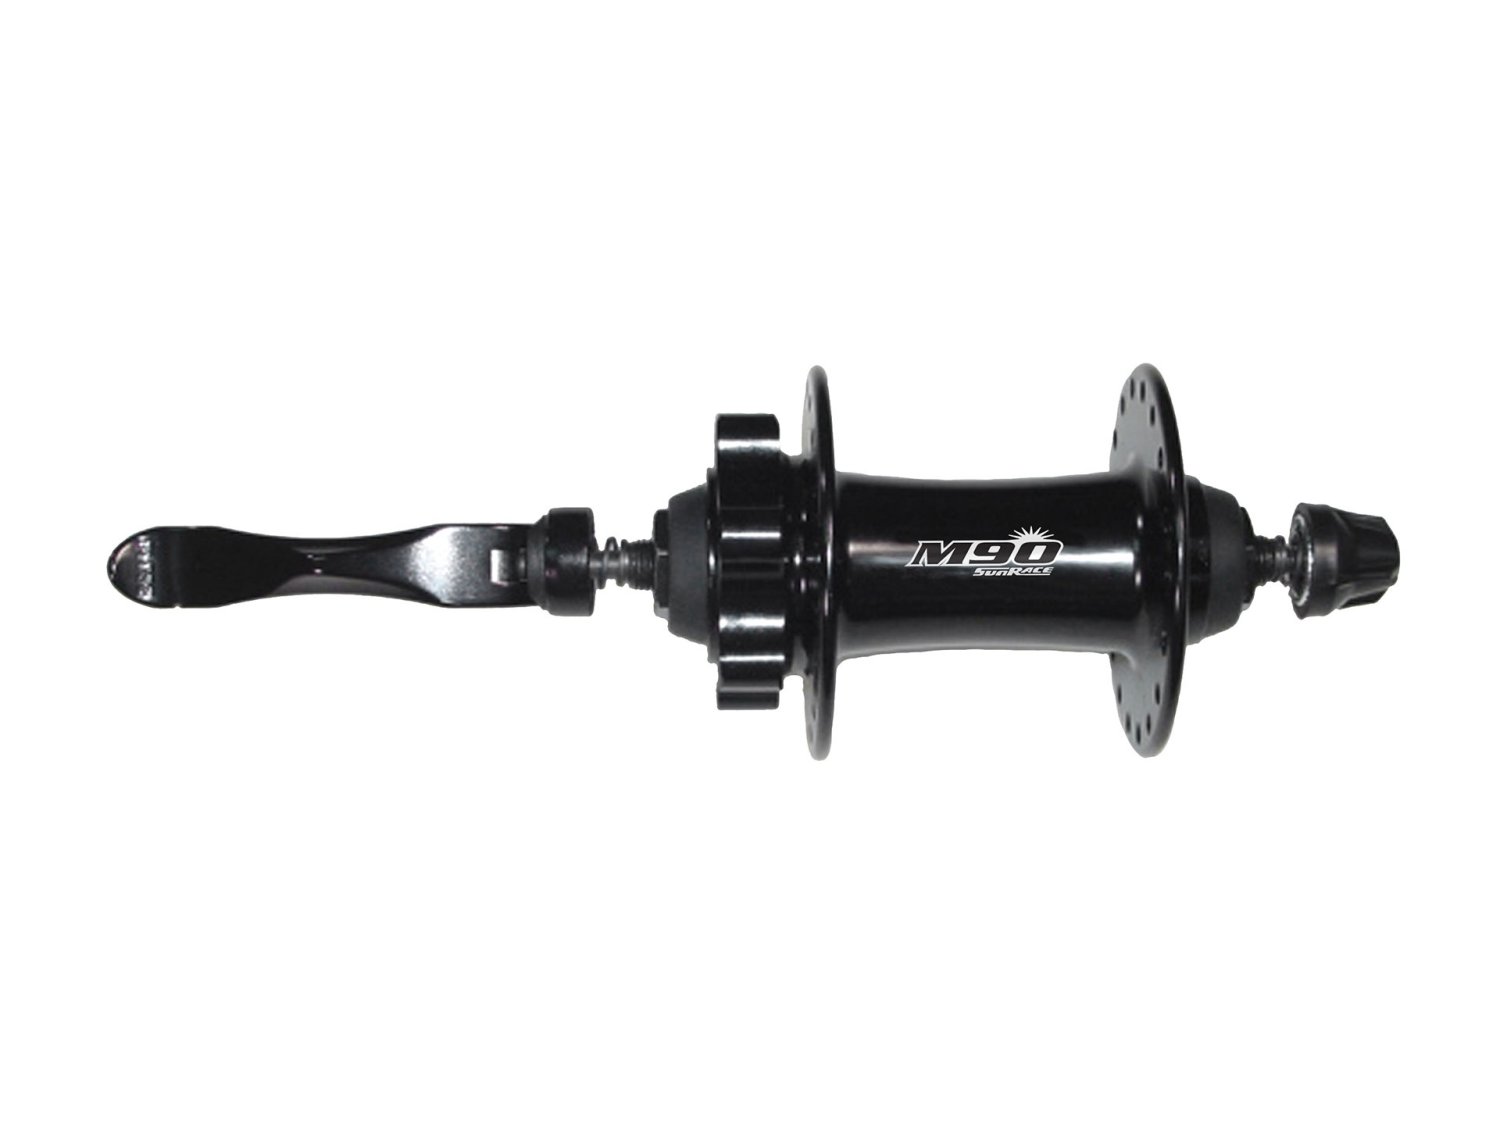 Втулка велосипедная SUNRACE HBM96.F0QS.DS1.BX M96, передняя, с эксцентриком, 32H, под диск, чёрный, 06-201509 велосипедная втулка передняя с эксцентриком 36 отверстий серебристая 00 170018